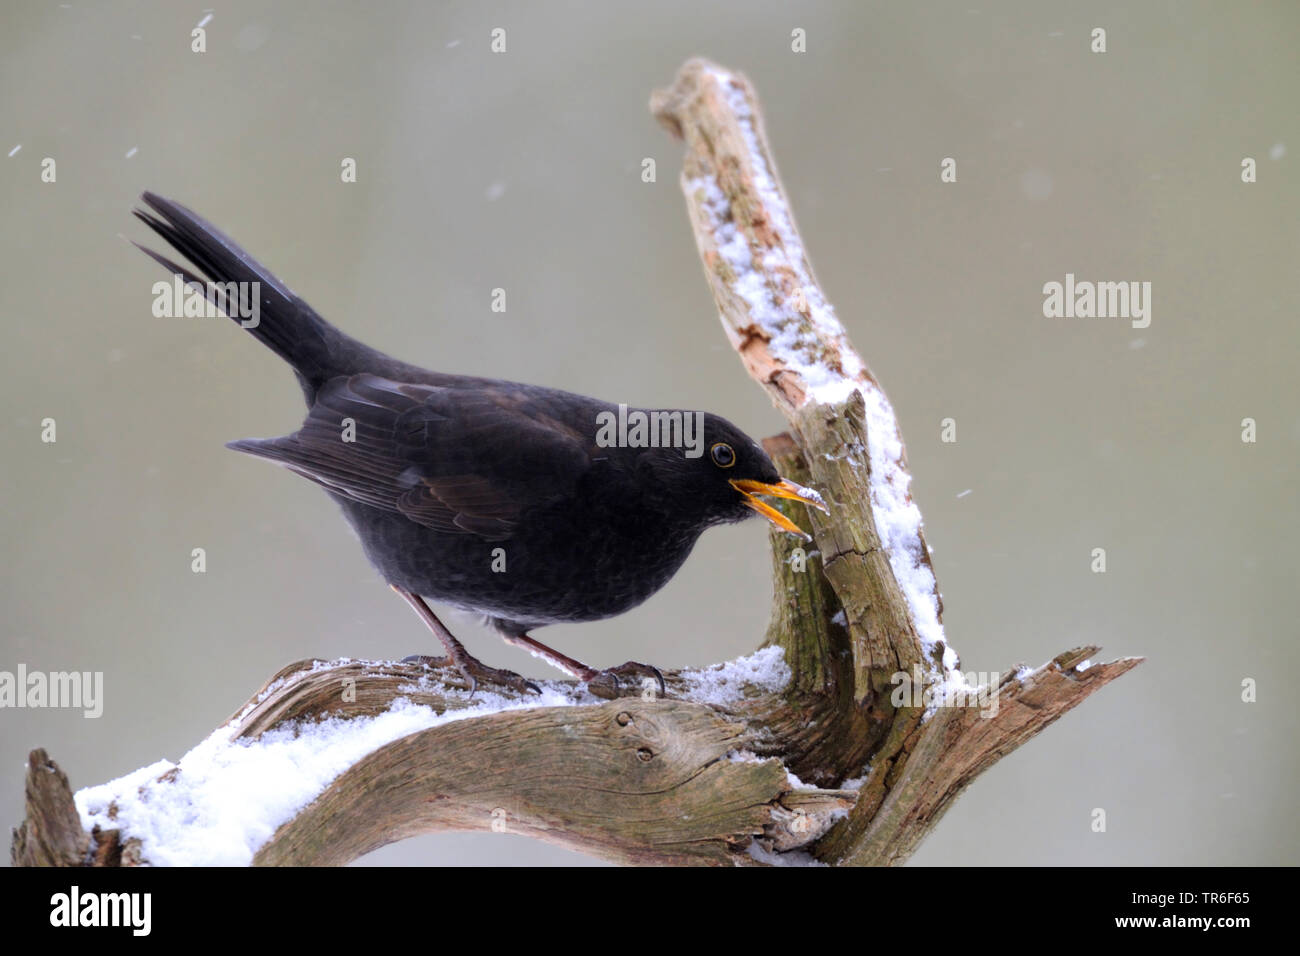 blackbird (Turdus merula), male on a branch in winter, calling, Germany Stock Photo